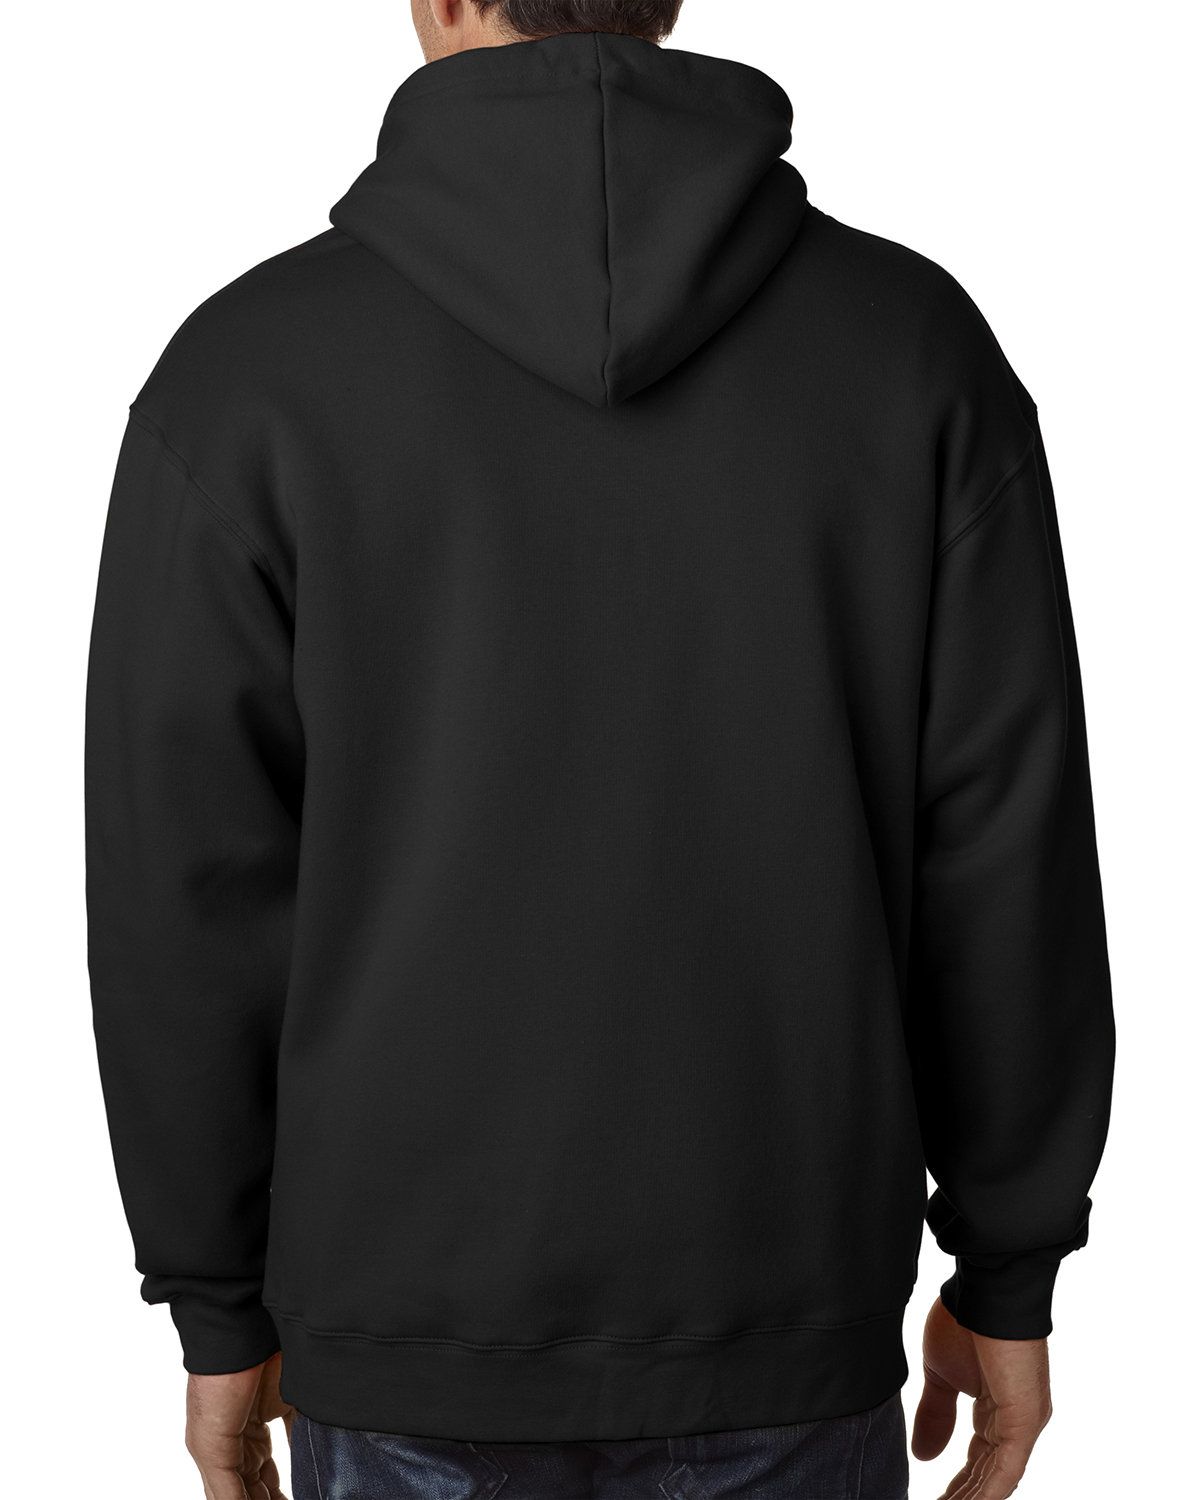 'Bayside BA900 Adult Full-Zip Hooded Sweatshirt'